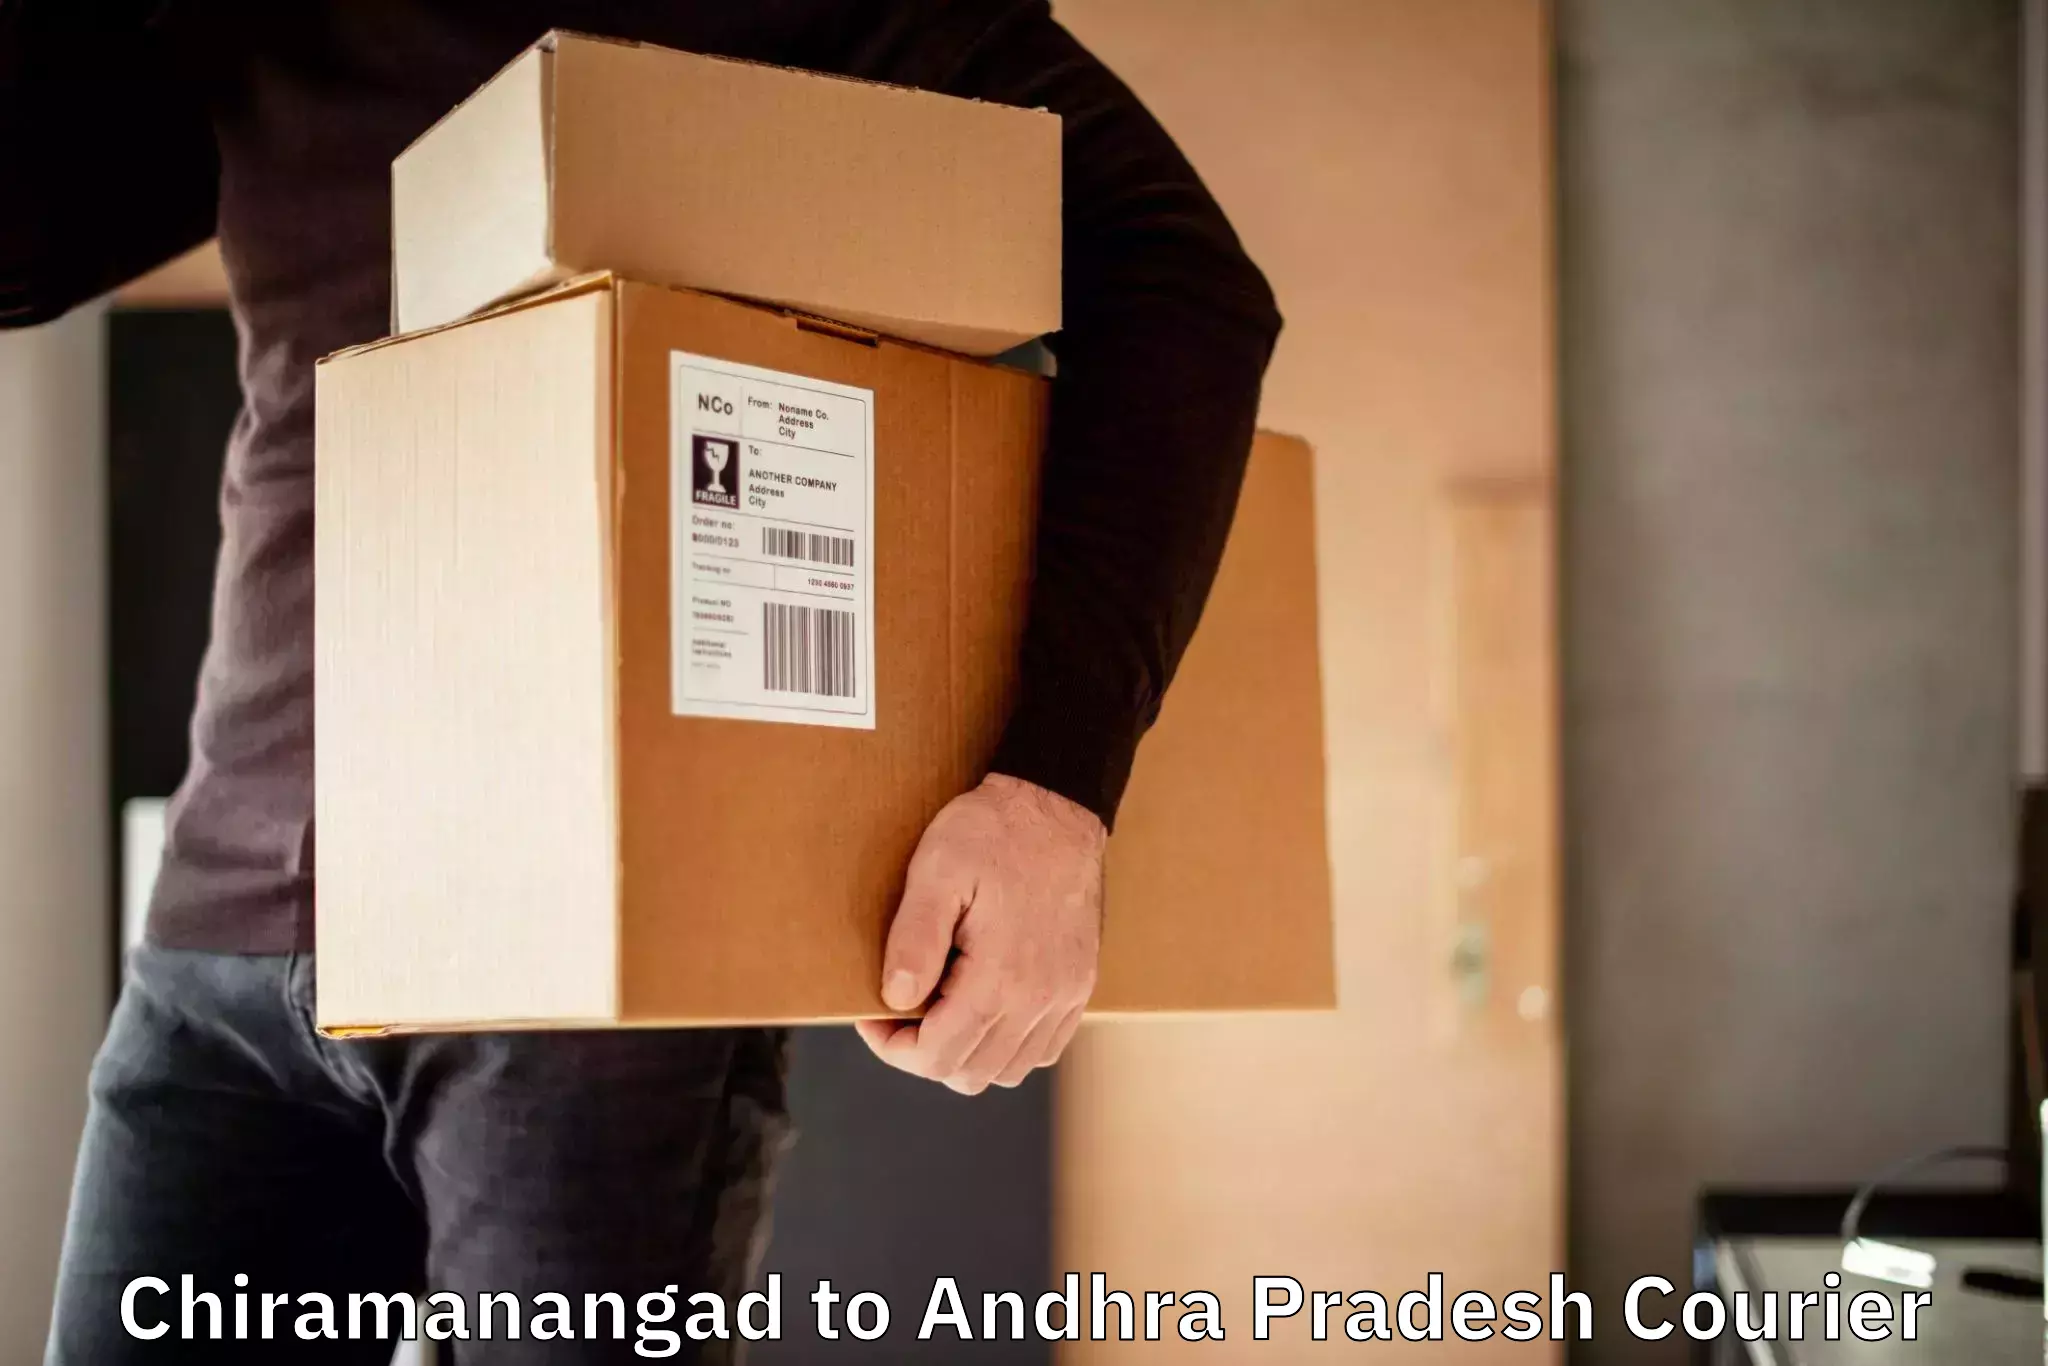 Secure packaging Chiramanangad to Yerravaram